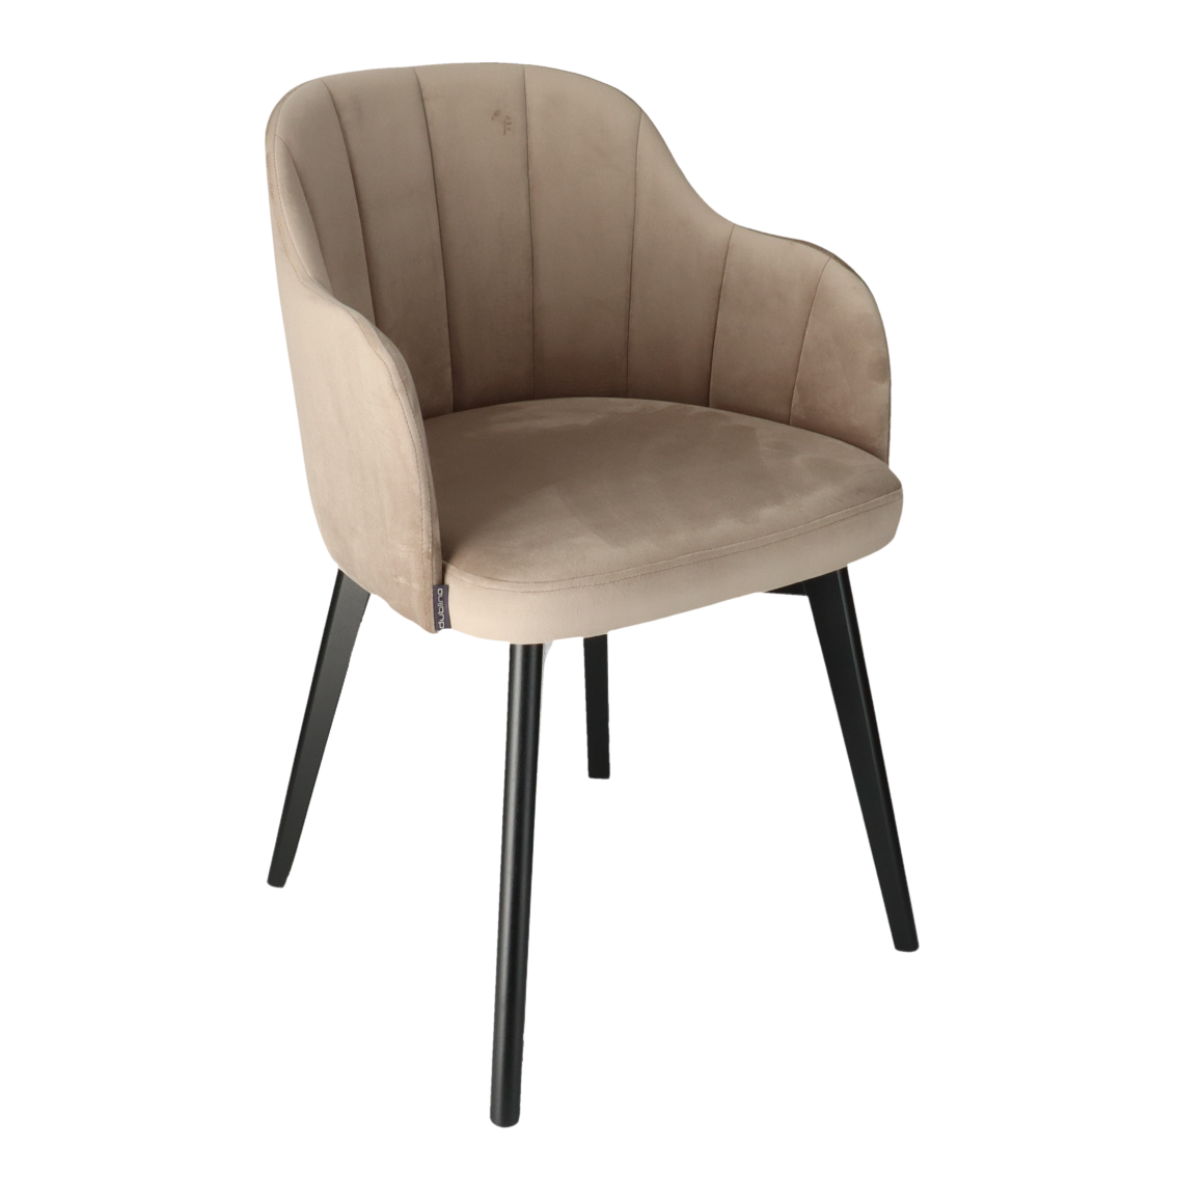 T NIKOL Barna design Kárpitos beltéri szék